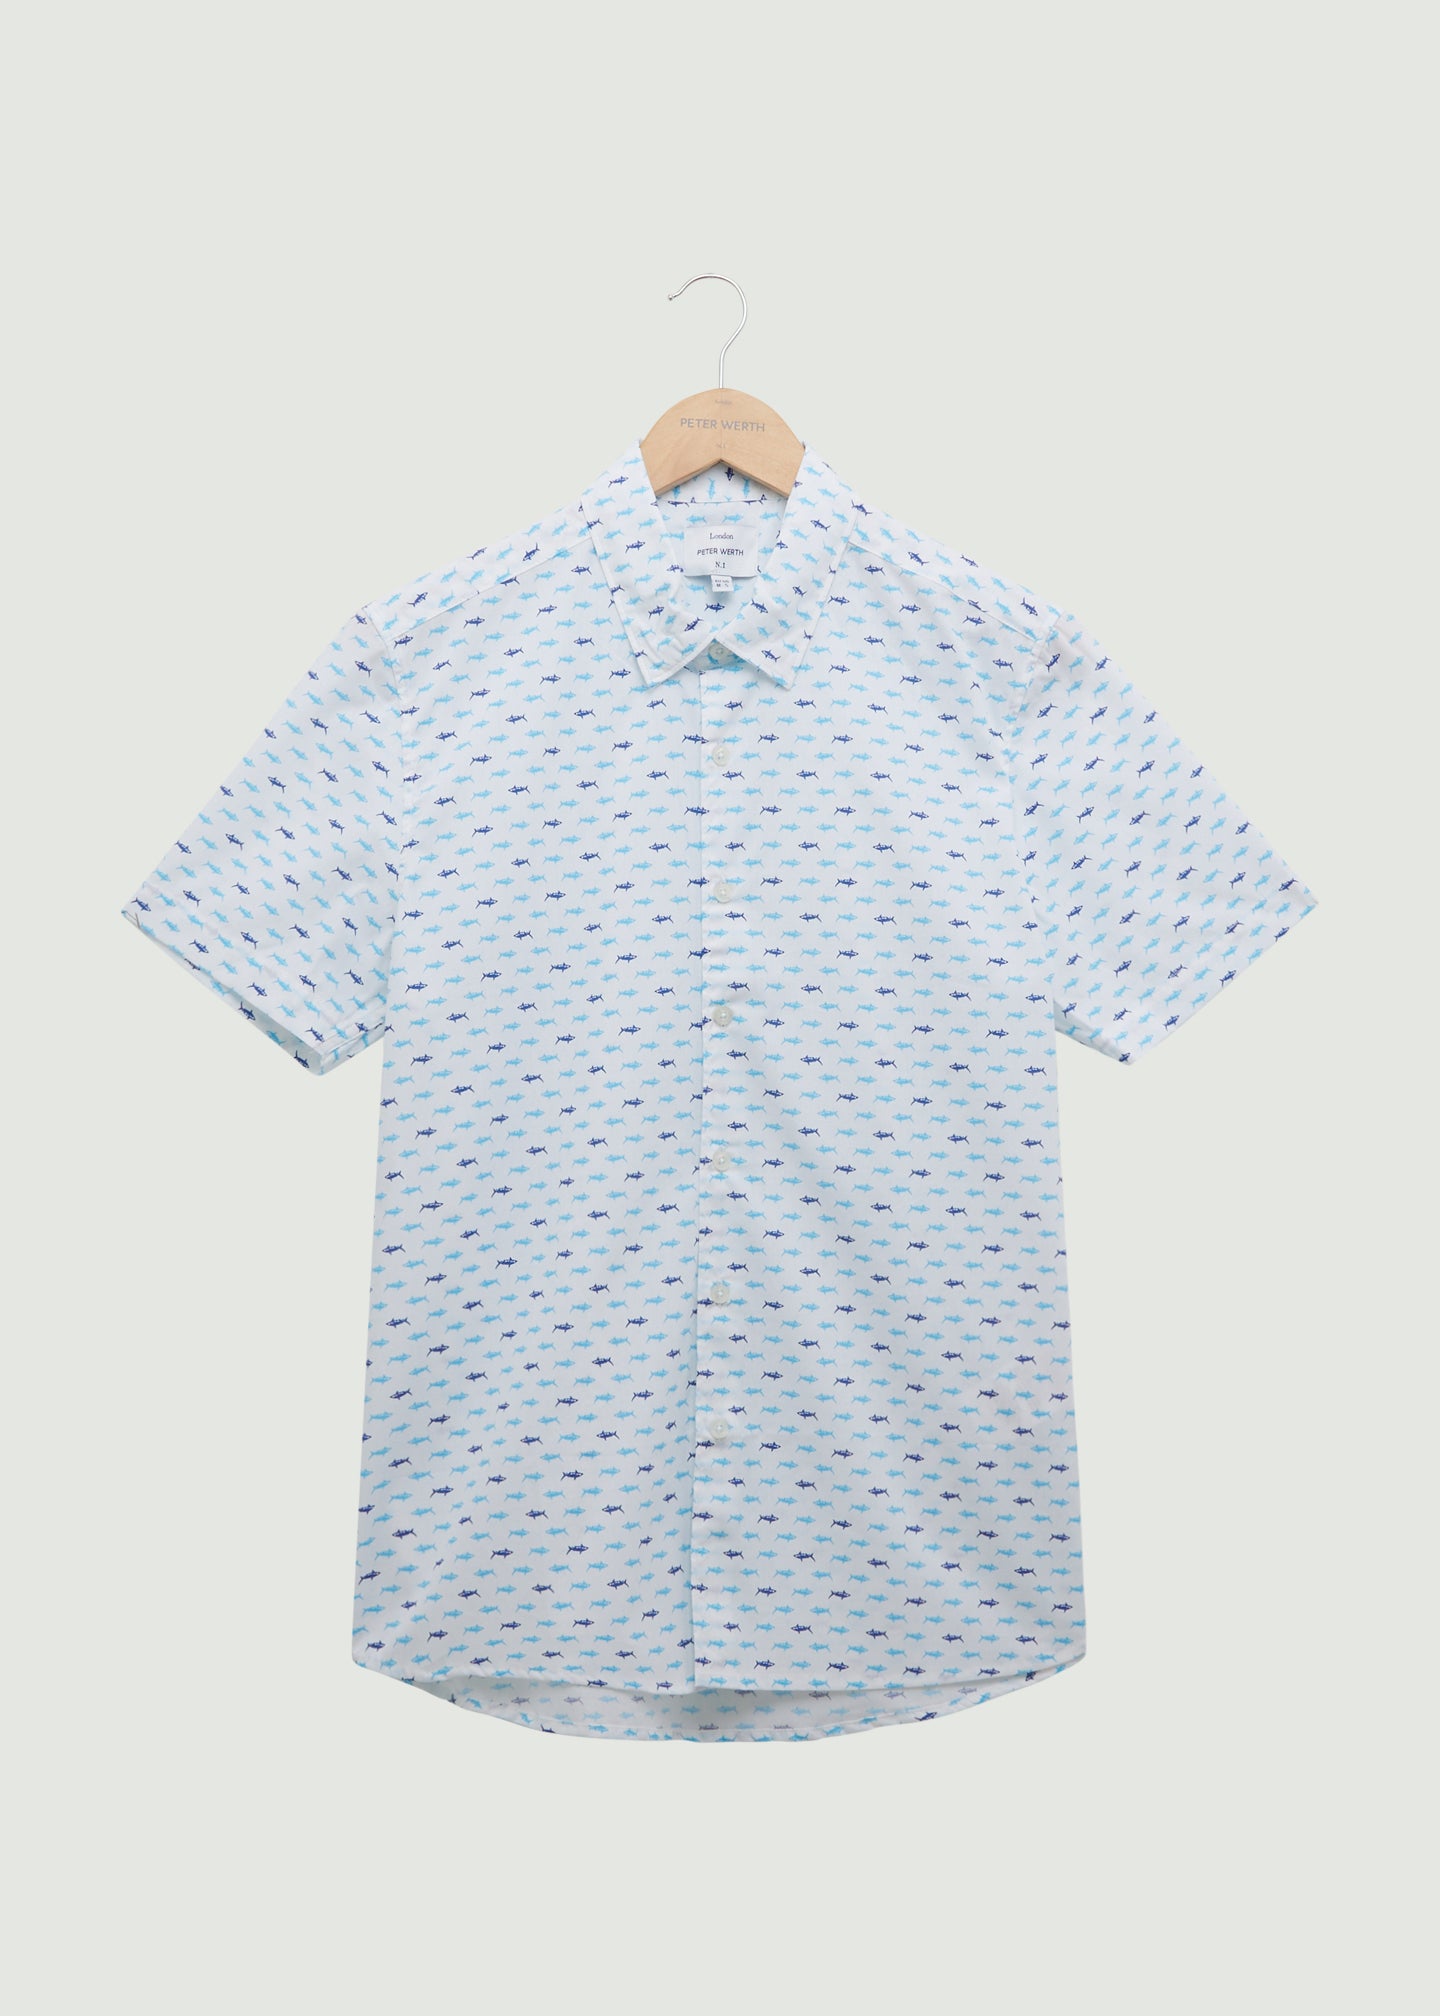 Pomfret SS Shirt - All Over Print